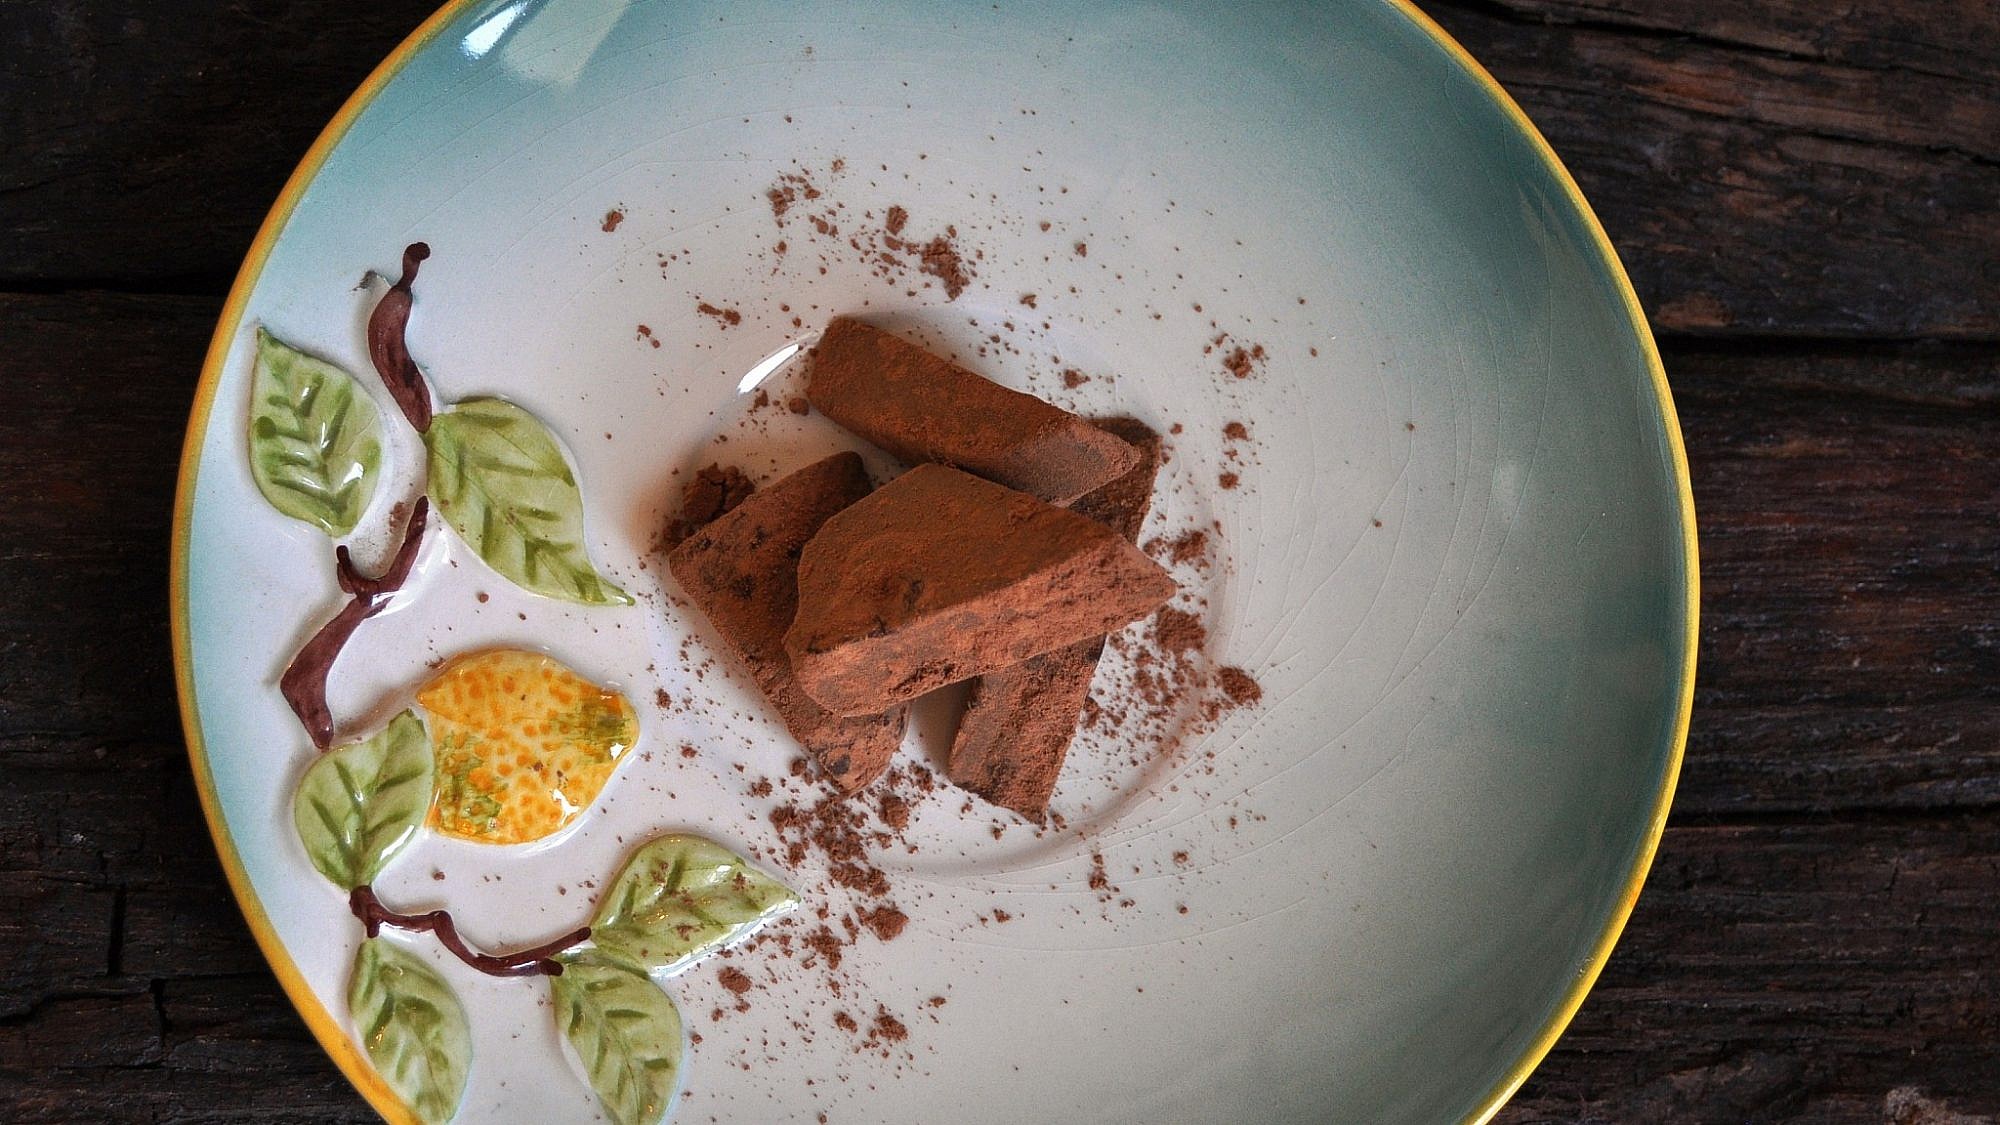 טראפלס שוקולד בחלב קוקוס של מרכז החוויה הטבעונית. צילום: שרית גופן